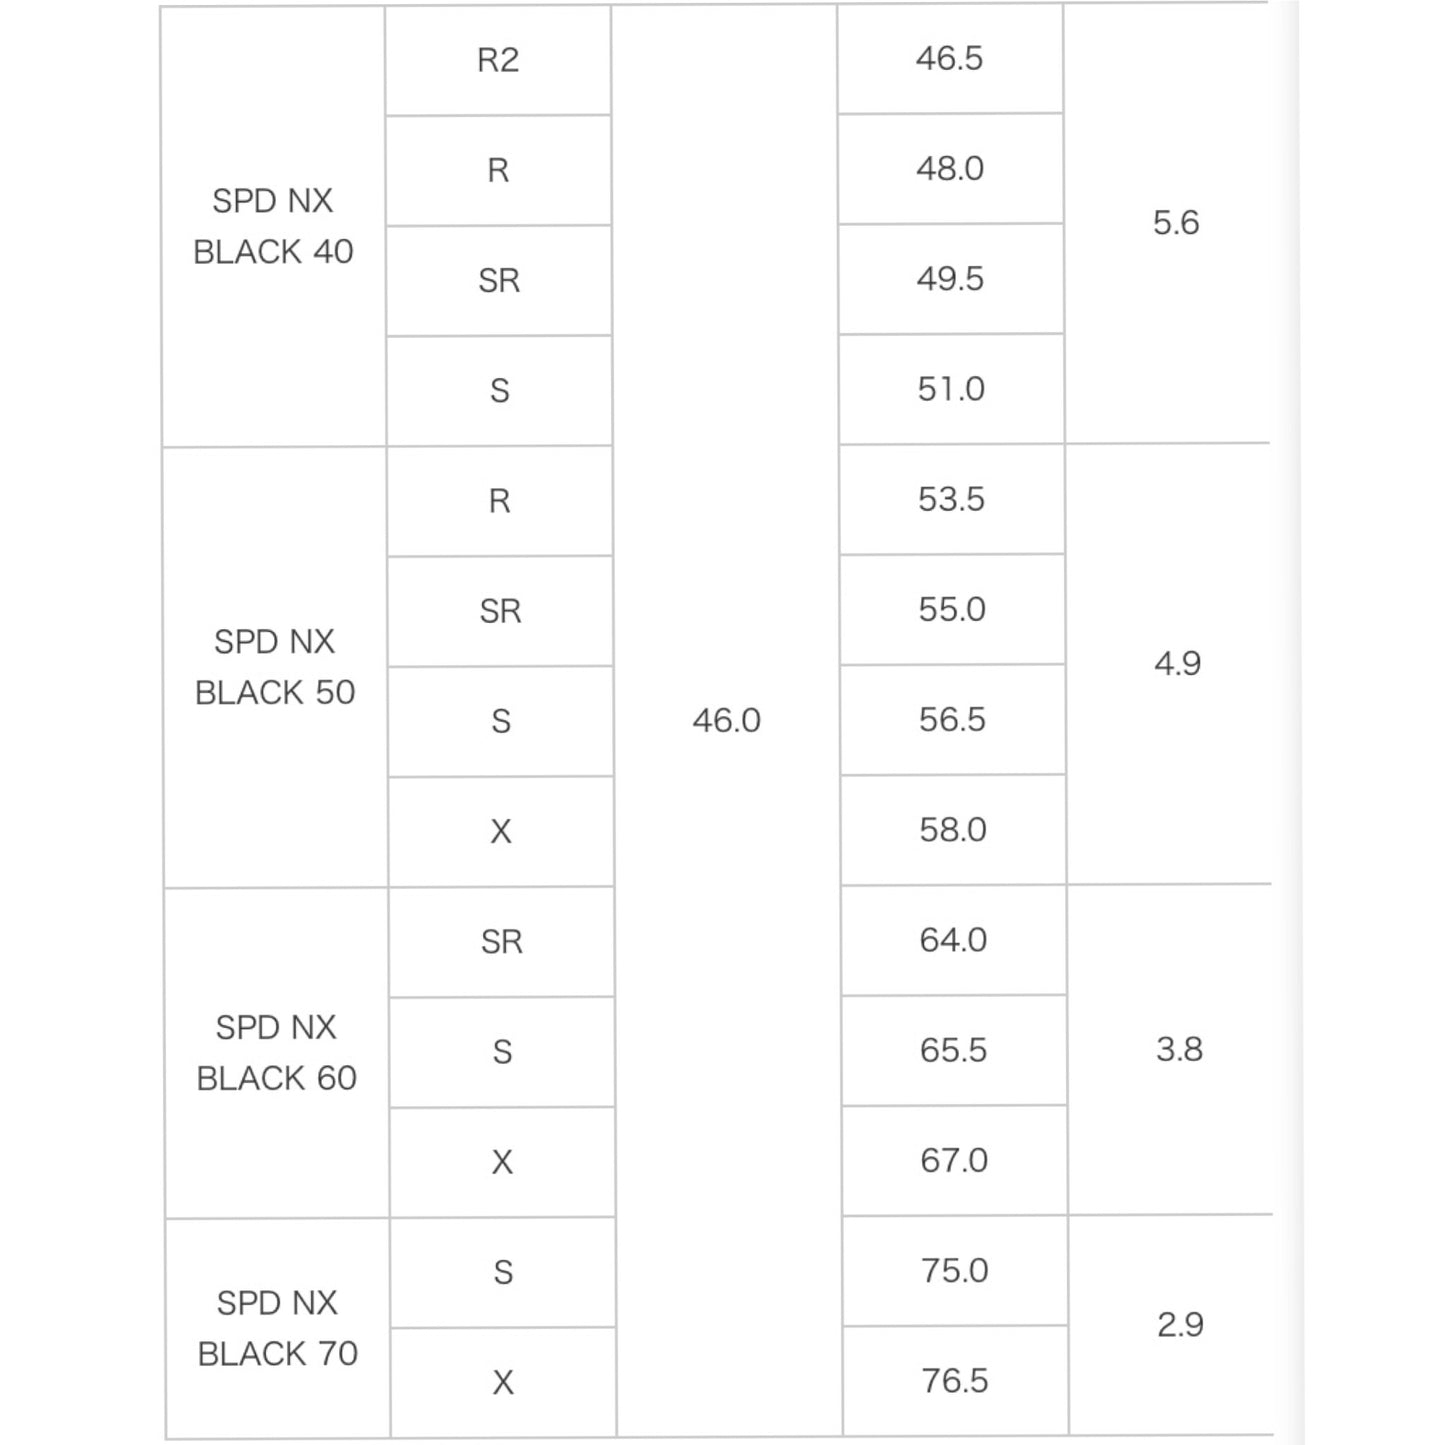 CL 【スパイン調整無料】【独自保証有り】Fujikura  NX BLACK BK 60/70 キャロウェイ パラダイム エピック系 マーベリック系 対応 ドライバー フジクラ スピーダー NX ブラック